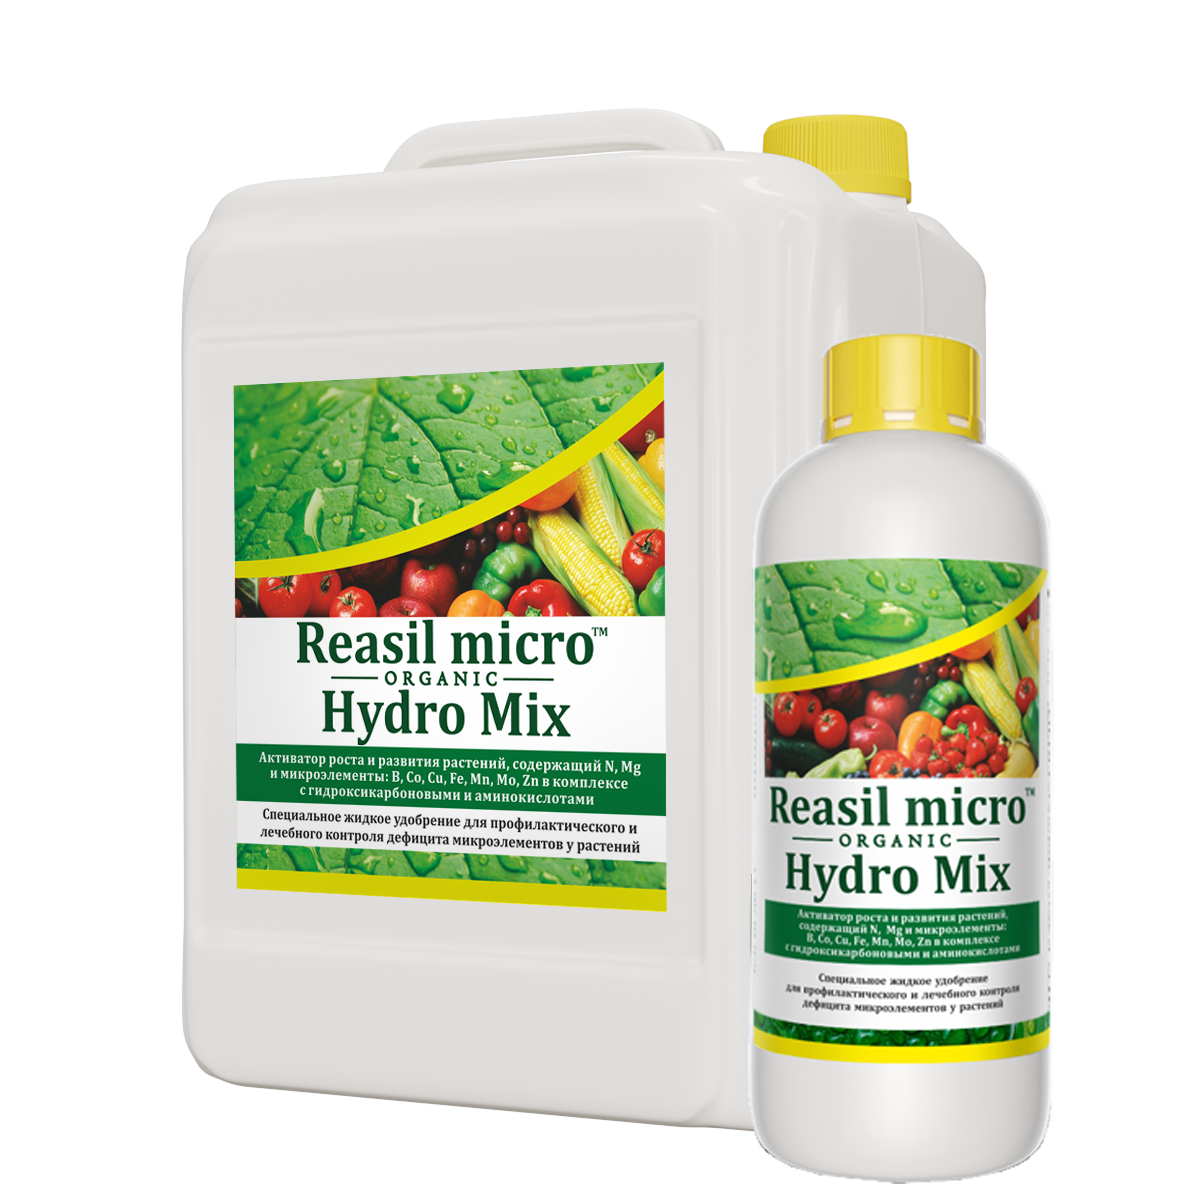 Reasil Micro Hydro Mix. Удобрения для растений. Средства защиты растений. Подкормка растений удобрениями. Растения активаторы